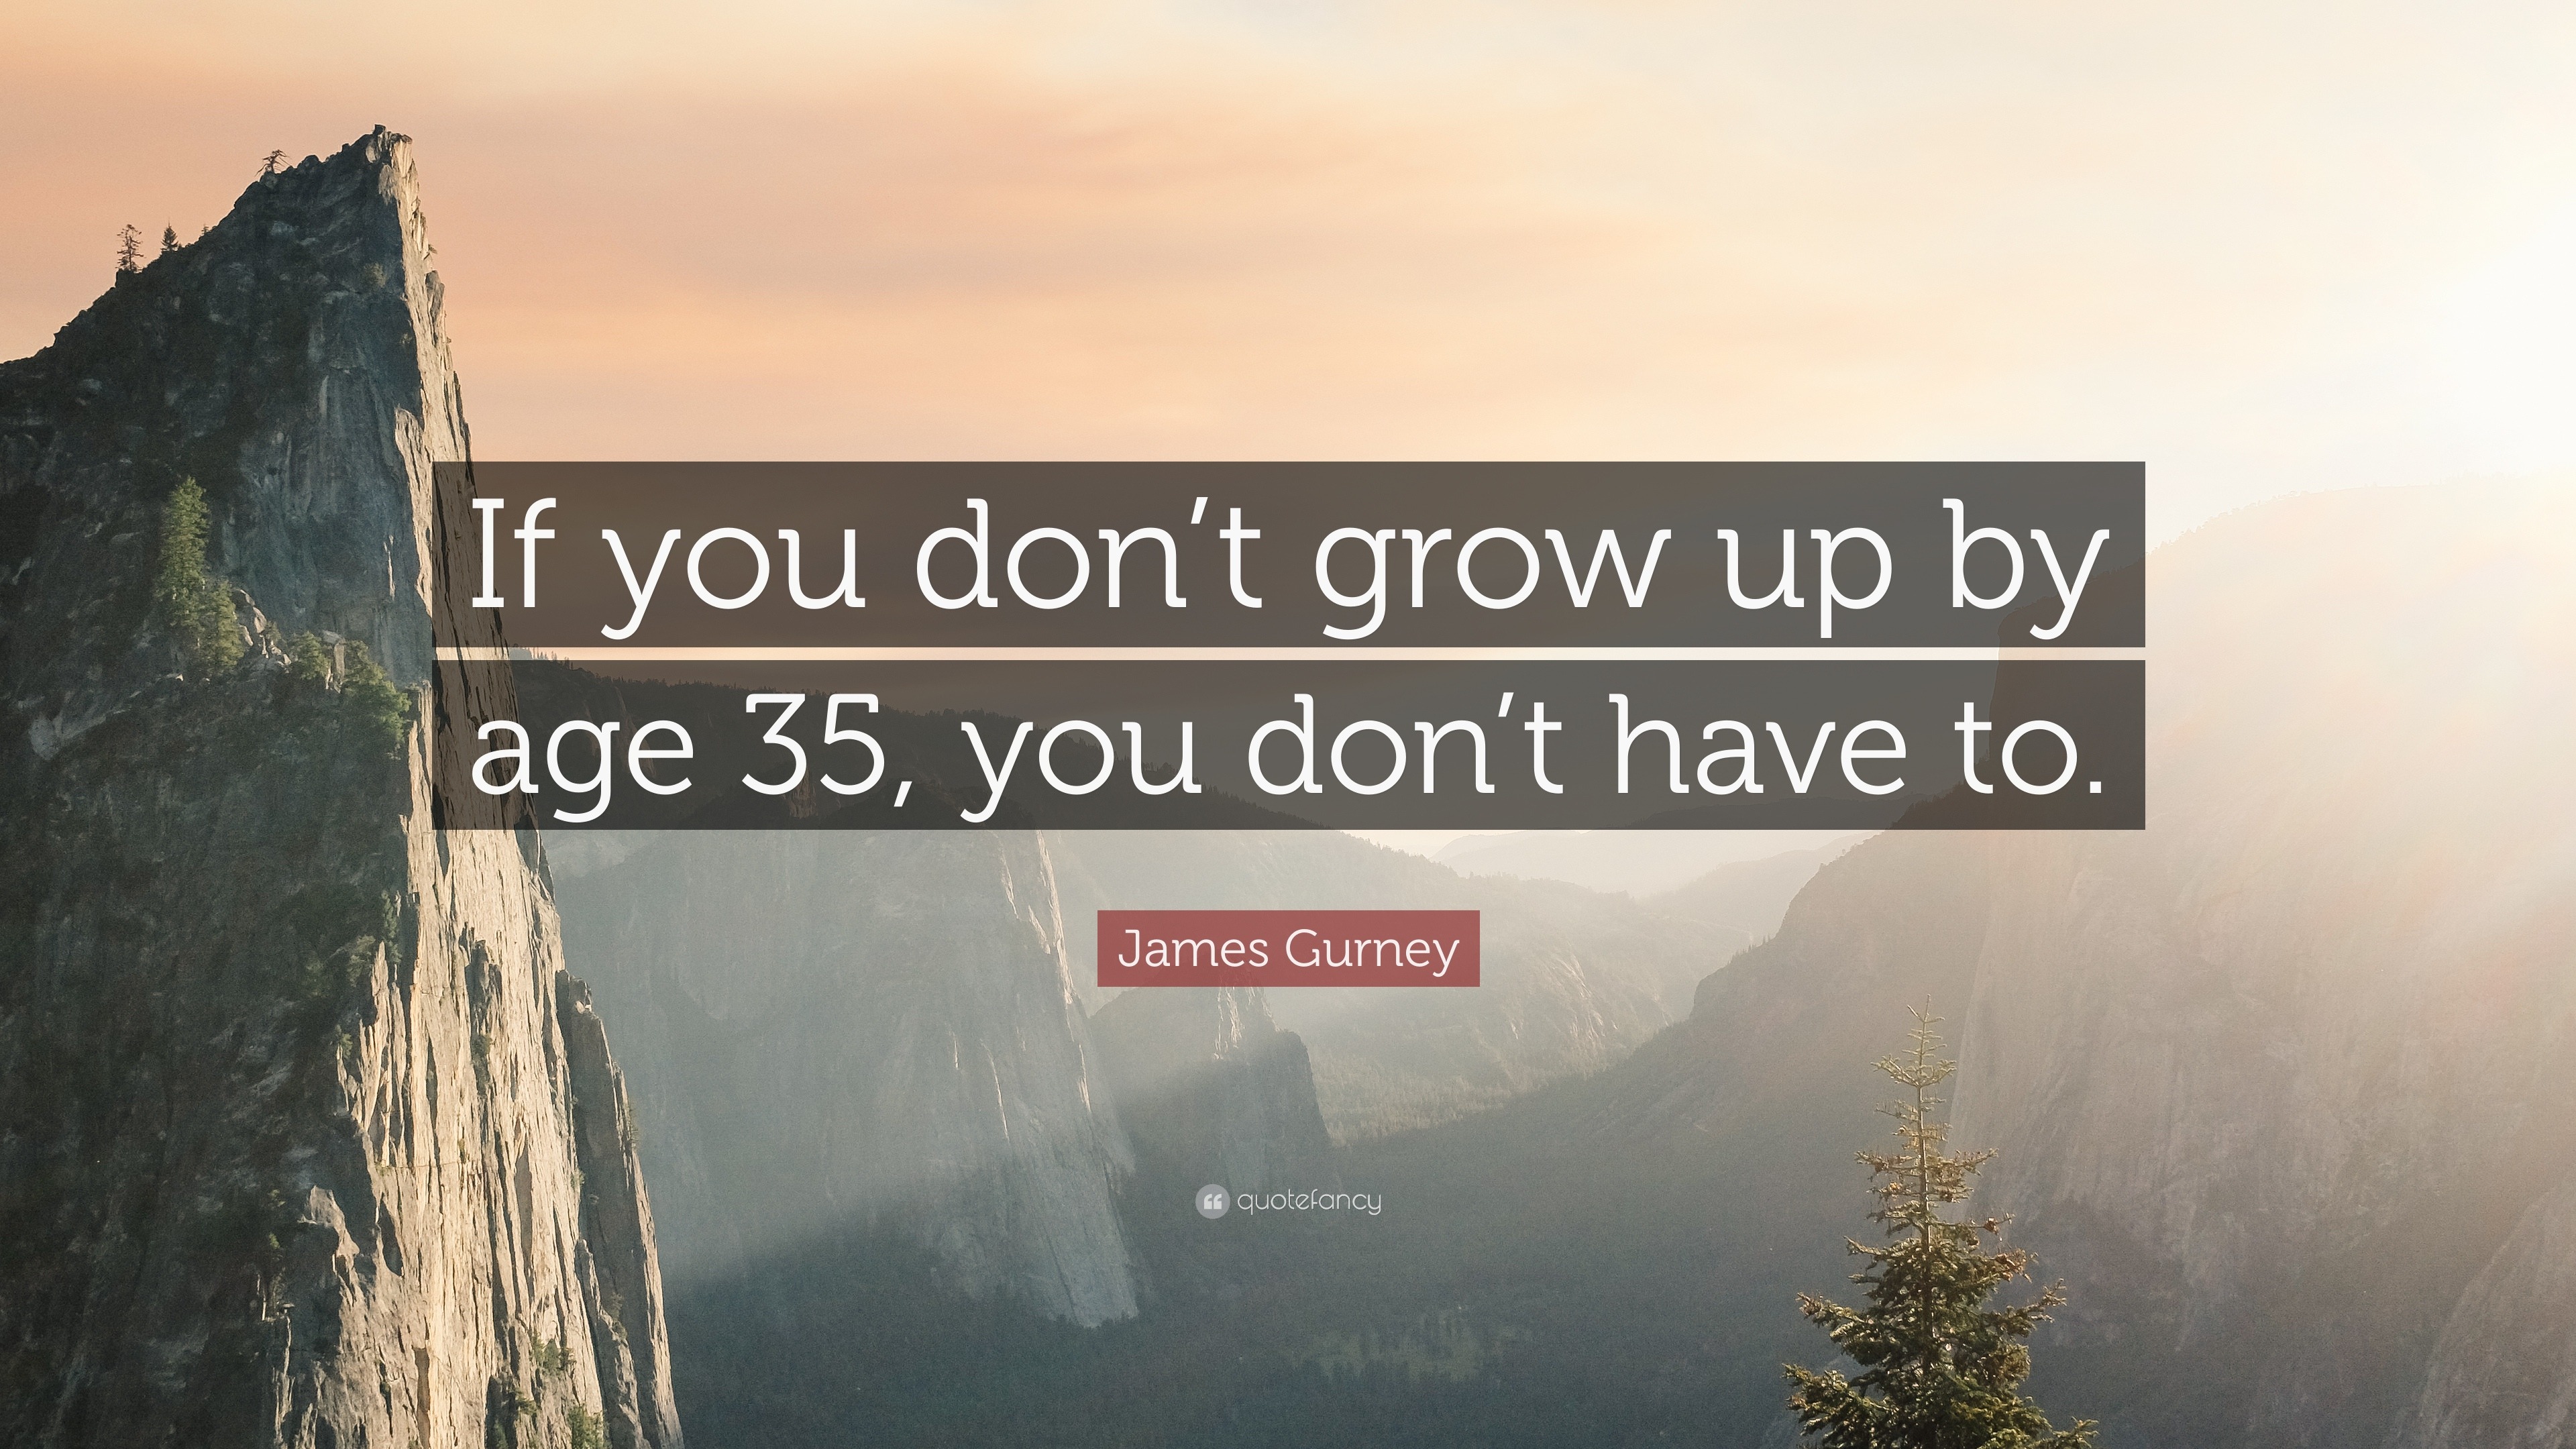 Top 5 James Gurney Quotes 21 Update Quotefancy